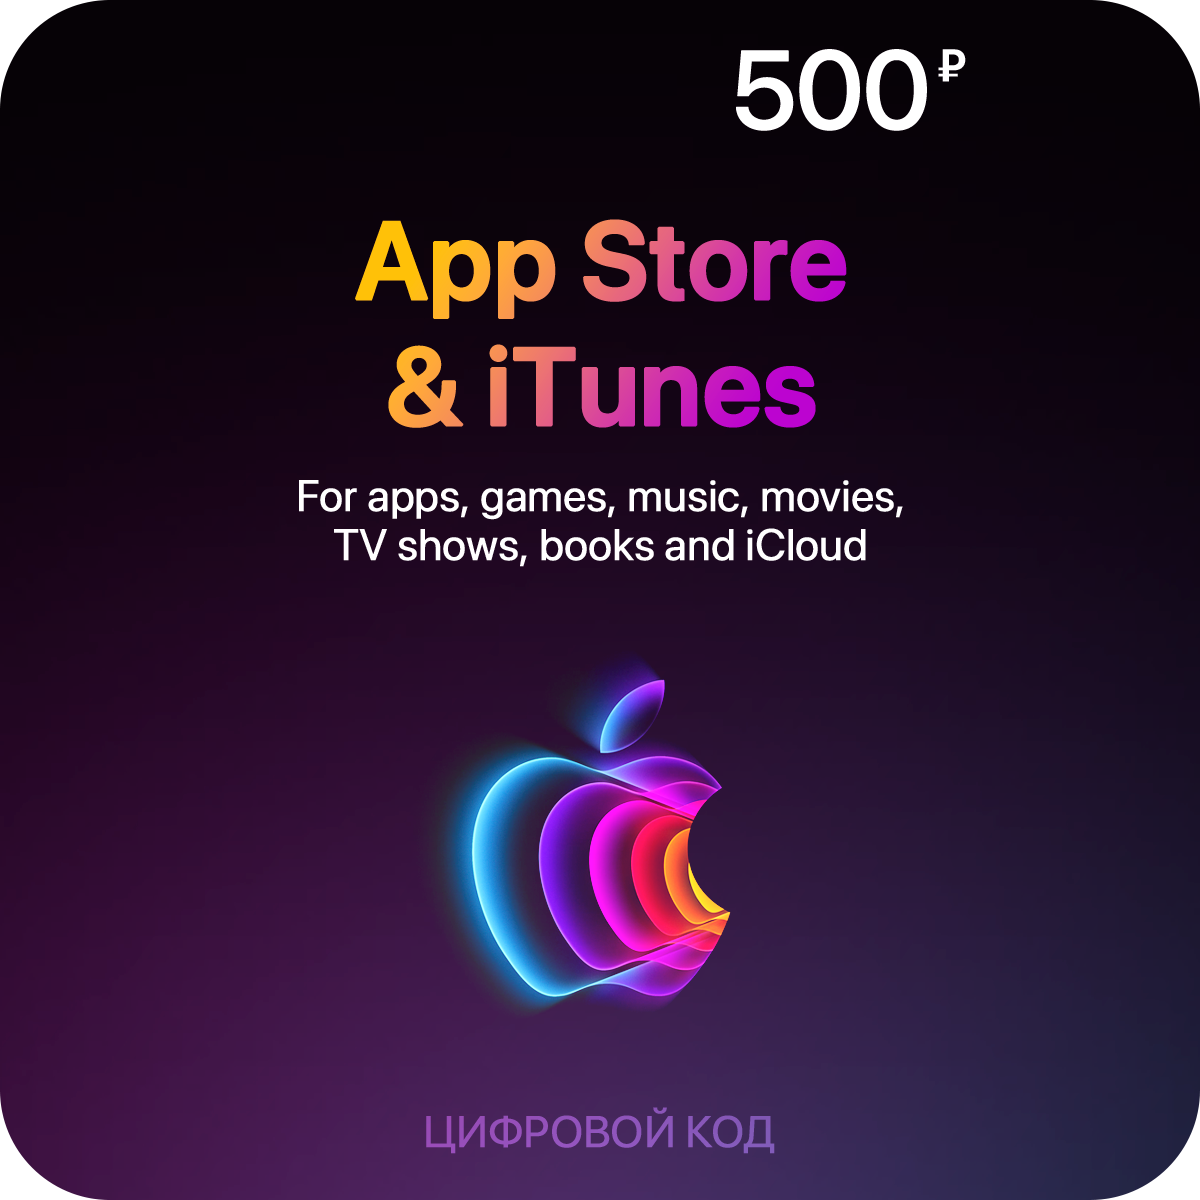 Пополнение счета App Store & iTunes (500 рублей)